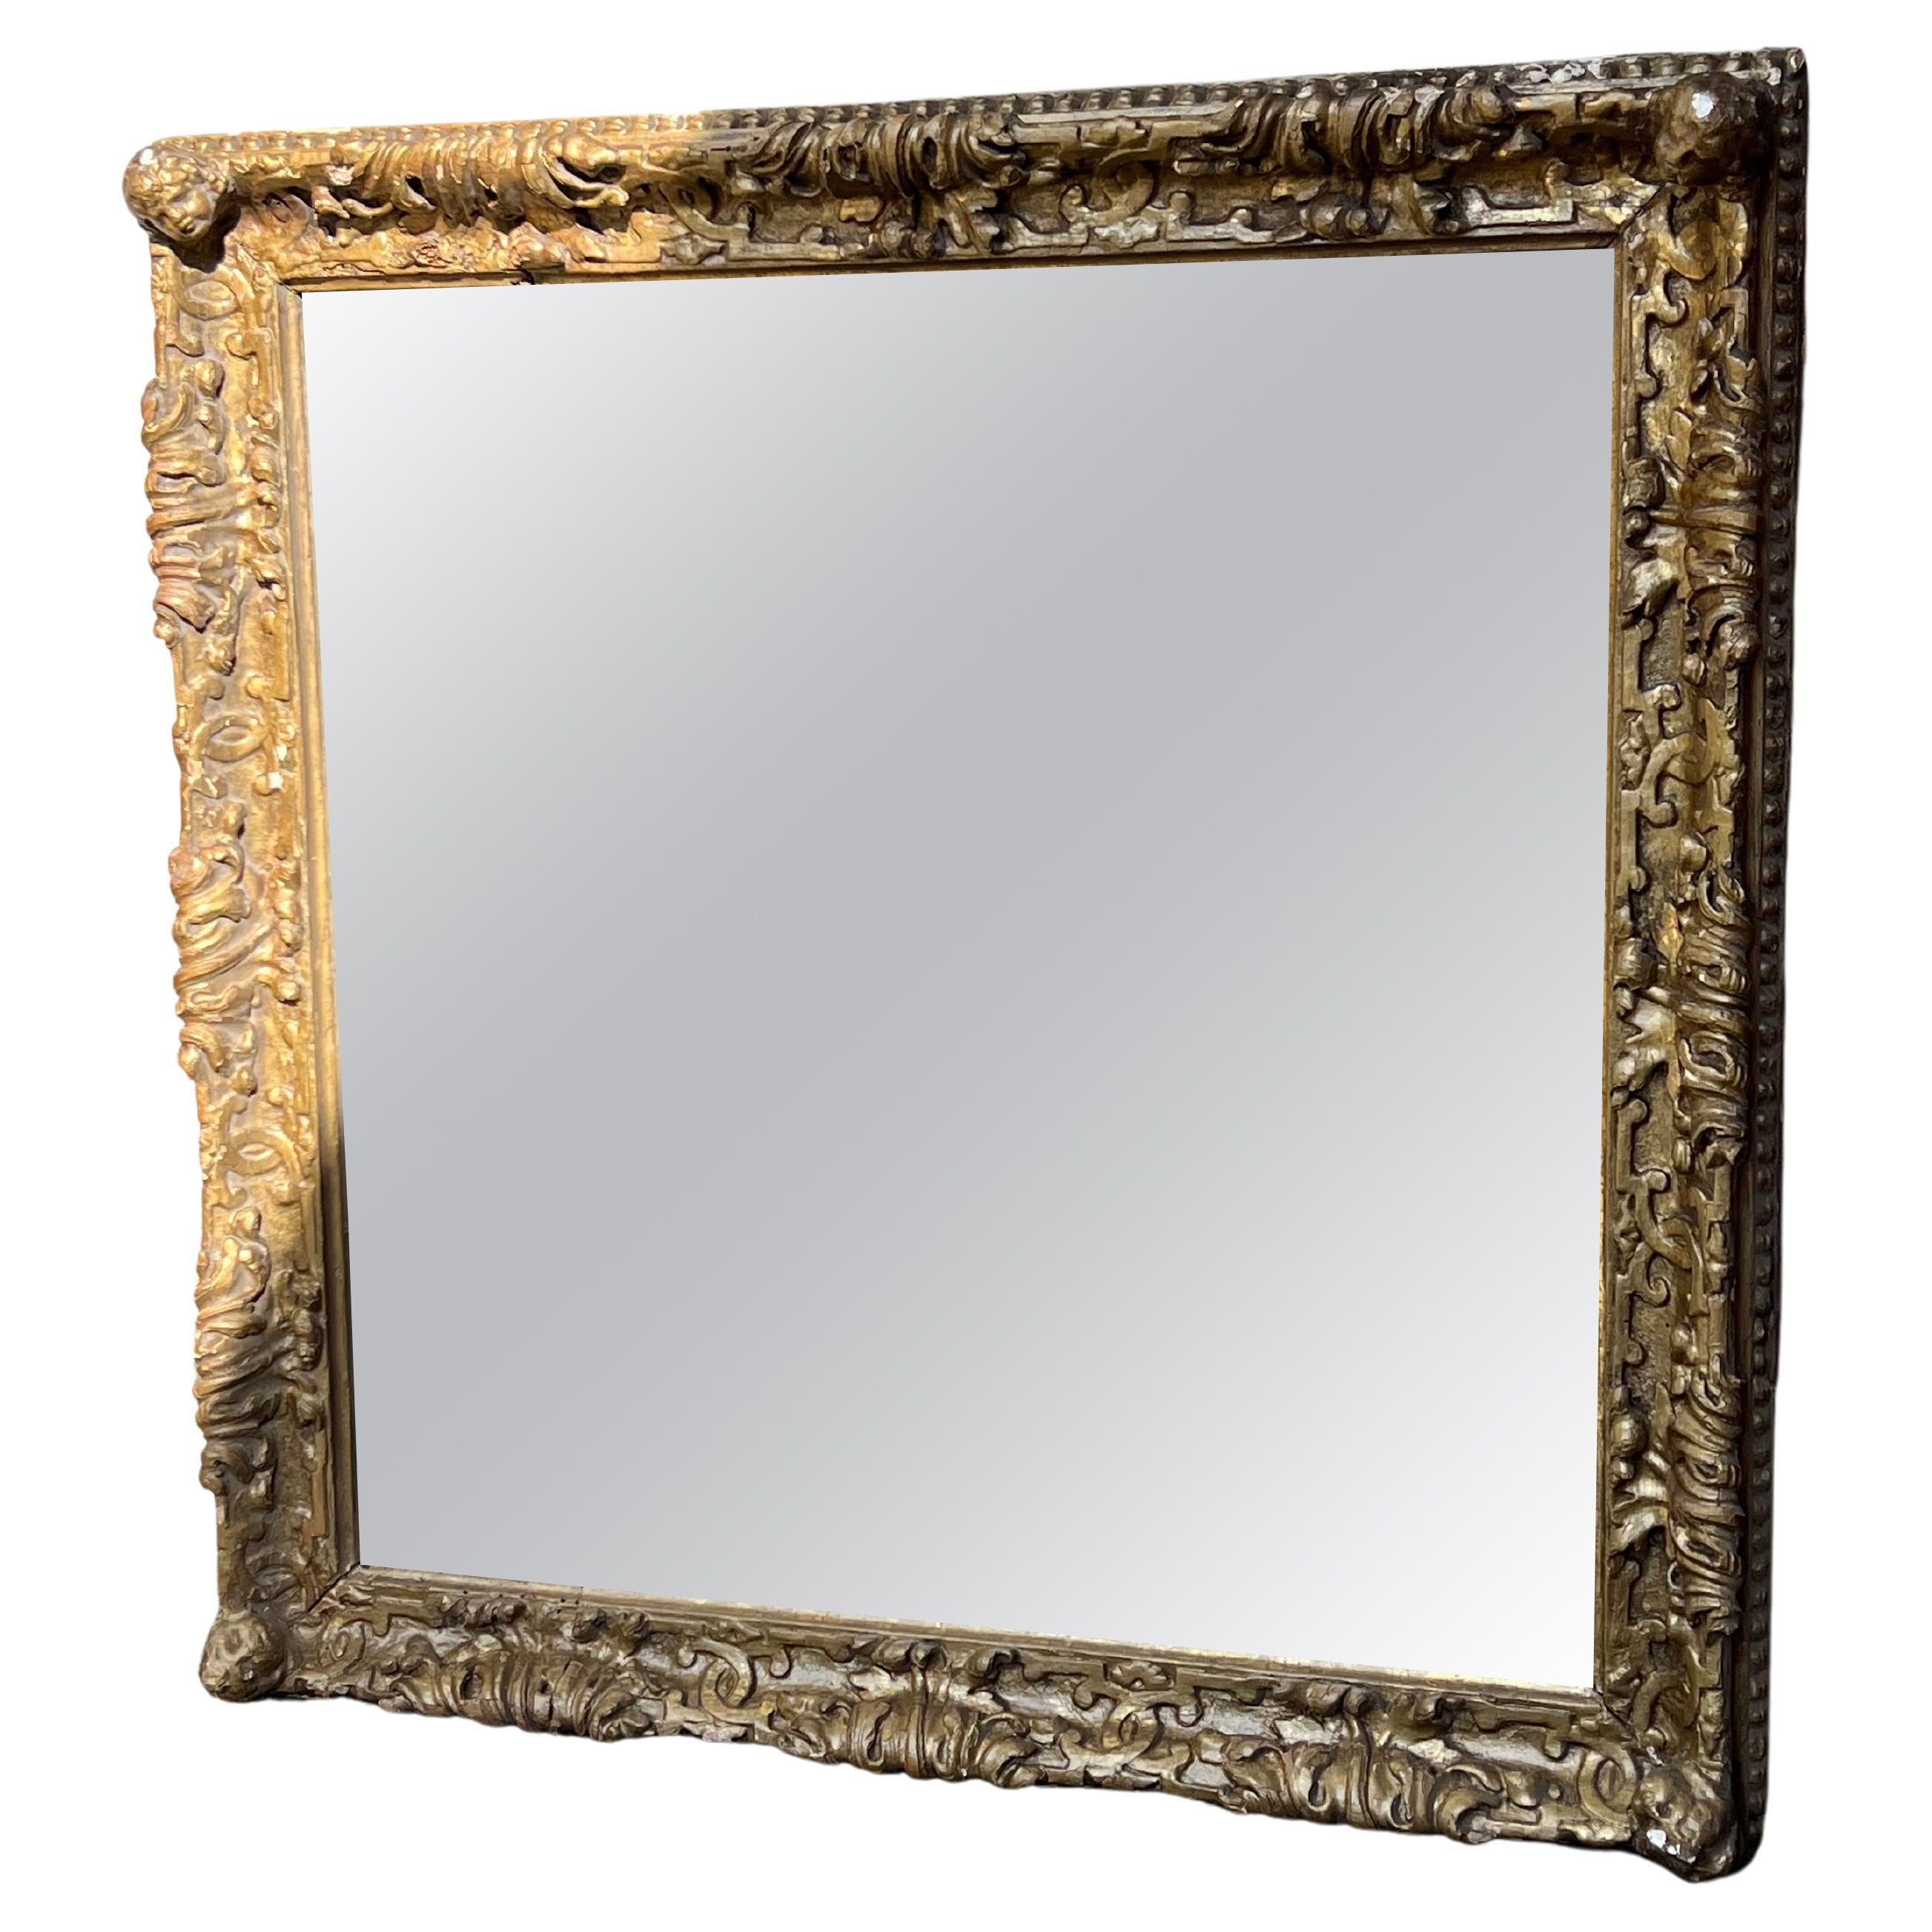 Antica Specchiera Quadrata in Oro Zecchino, Putti, Mirror, Specchiera